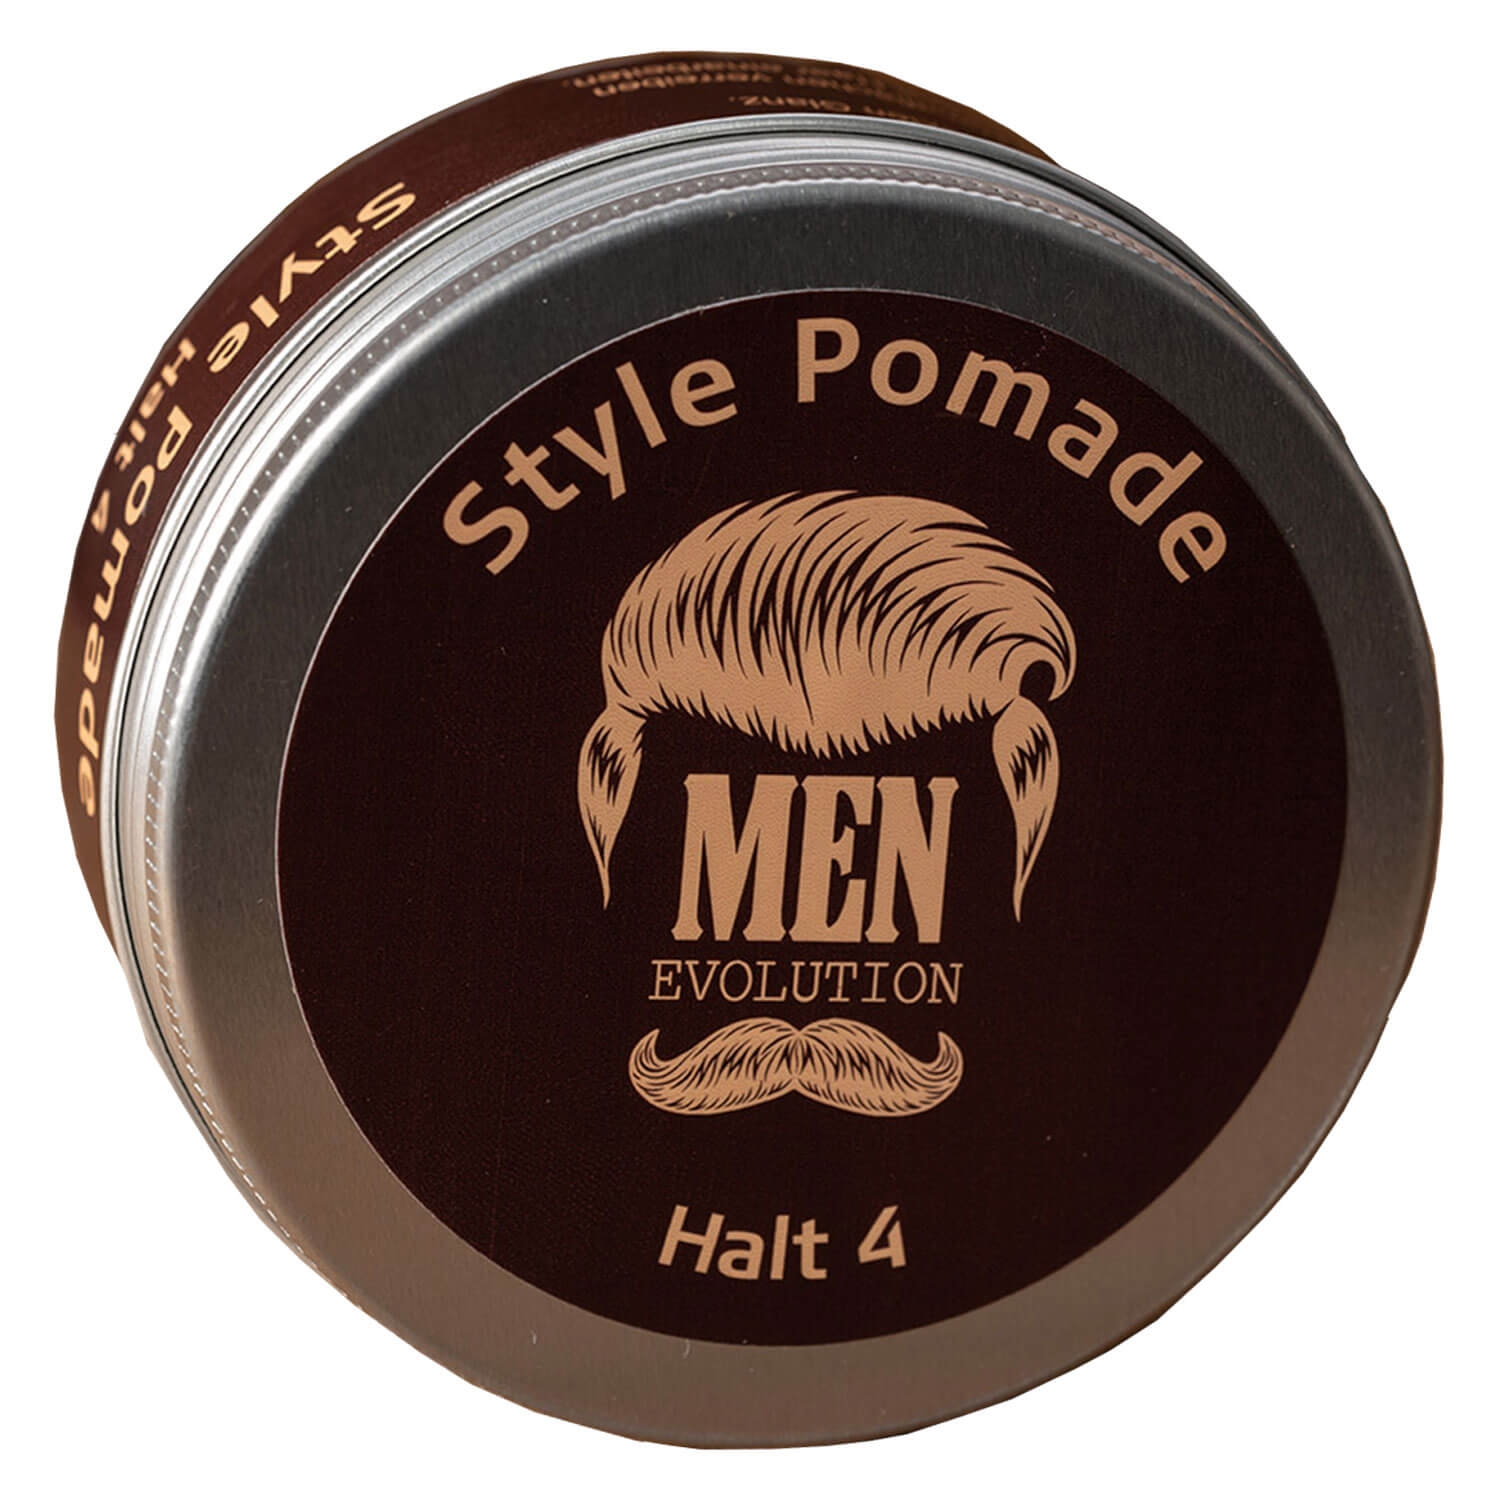 Produktbild von MEN Evolution - Style Pomade